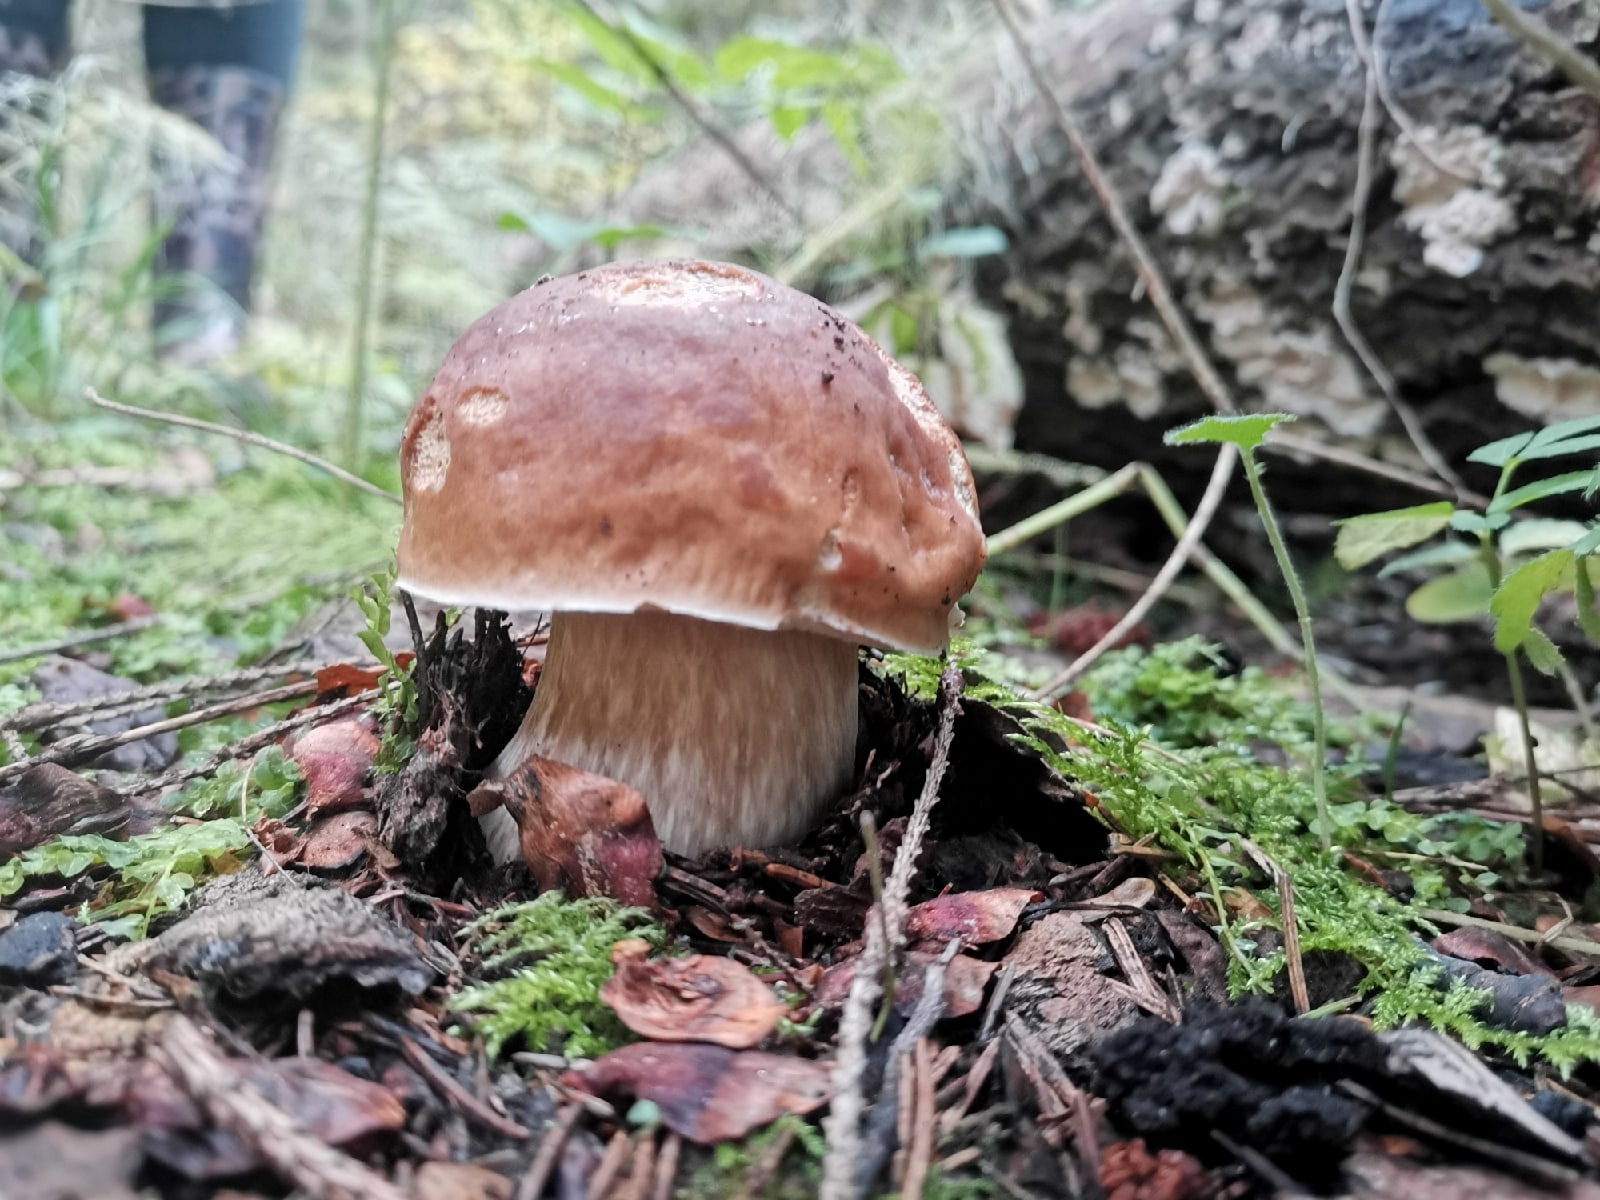 Жители Тверской области собирают грибы вёдрами, коробками и бельевыми корзинами